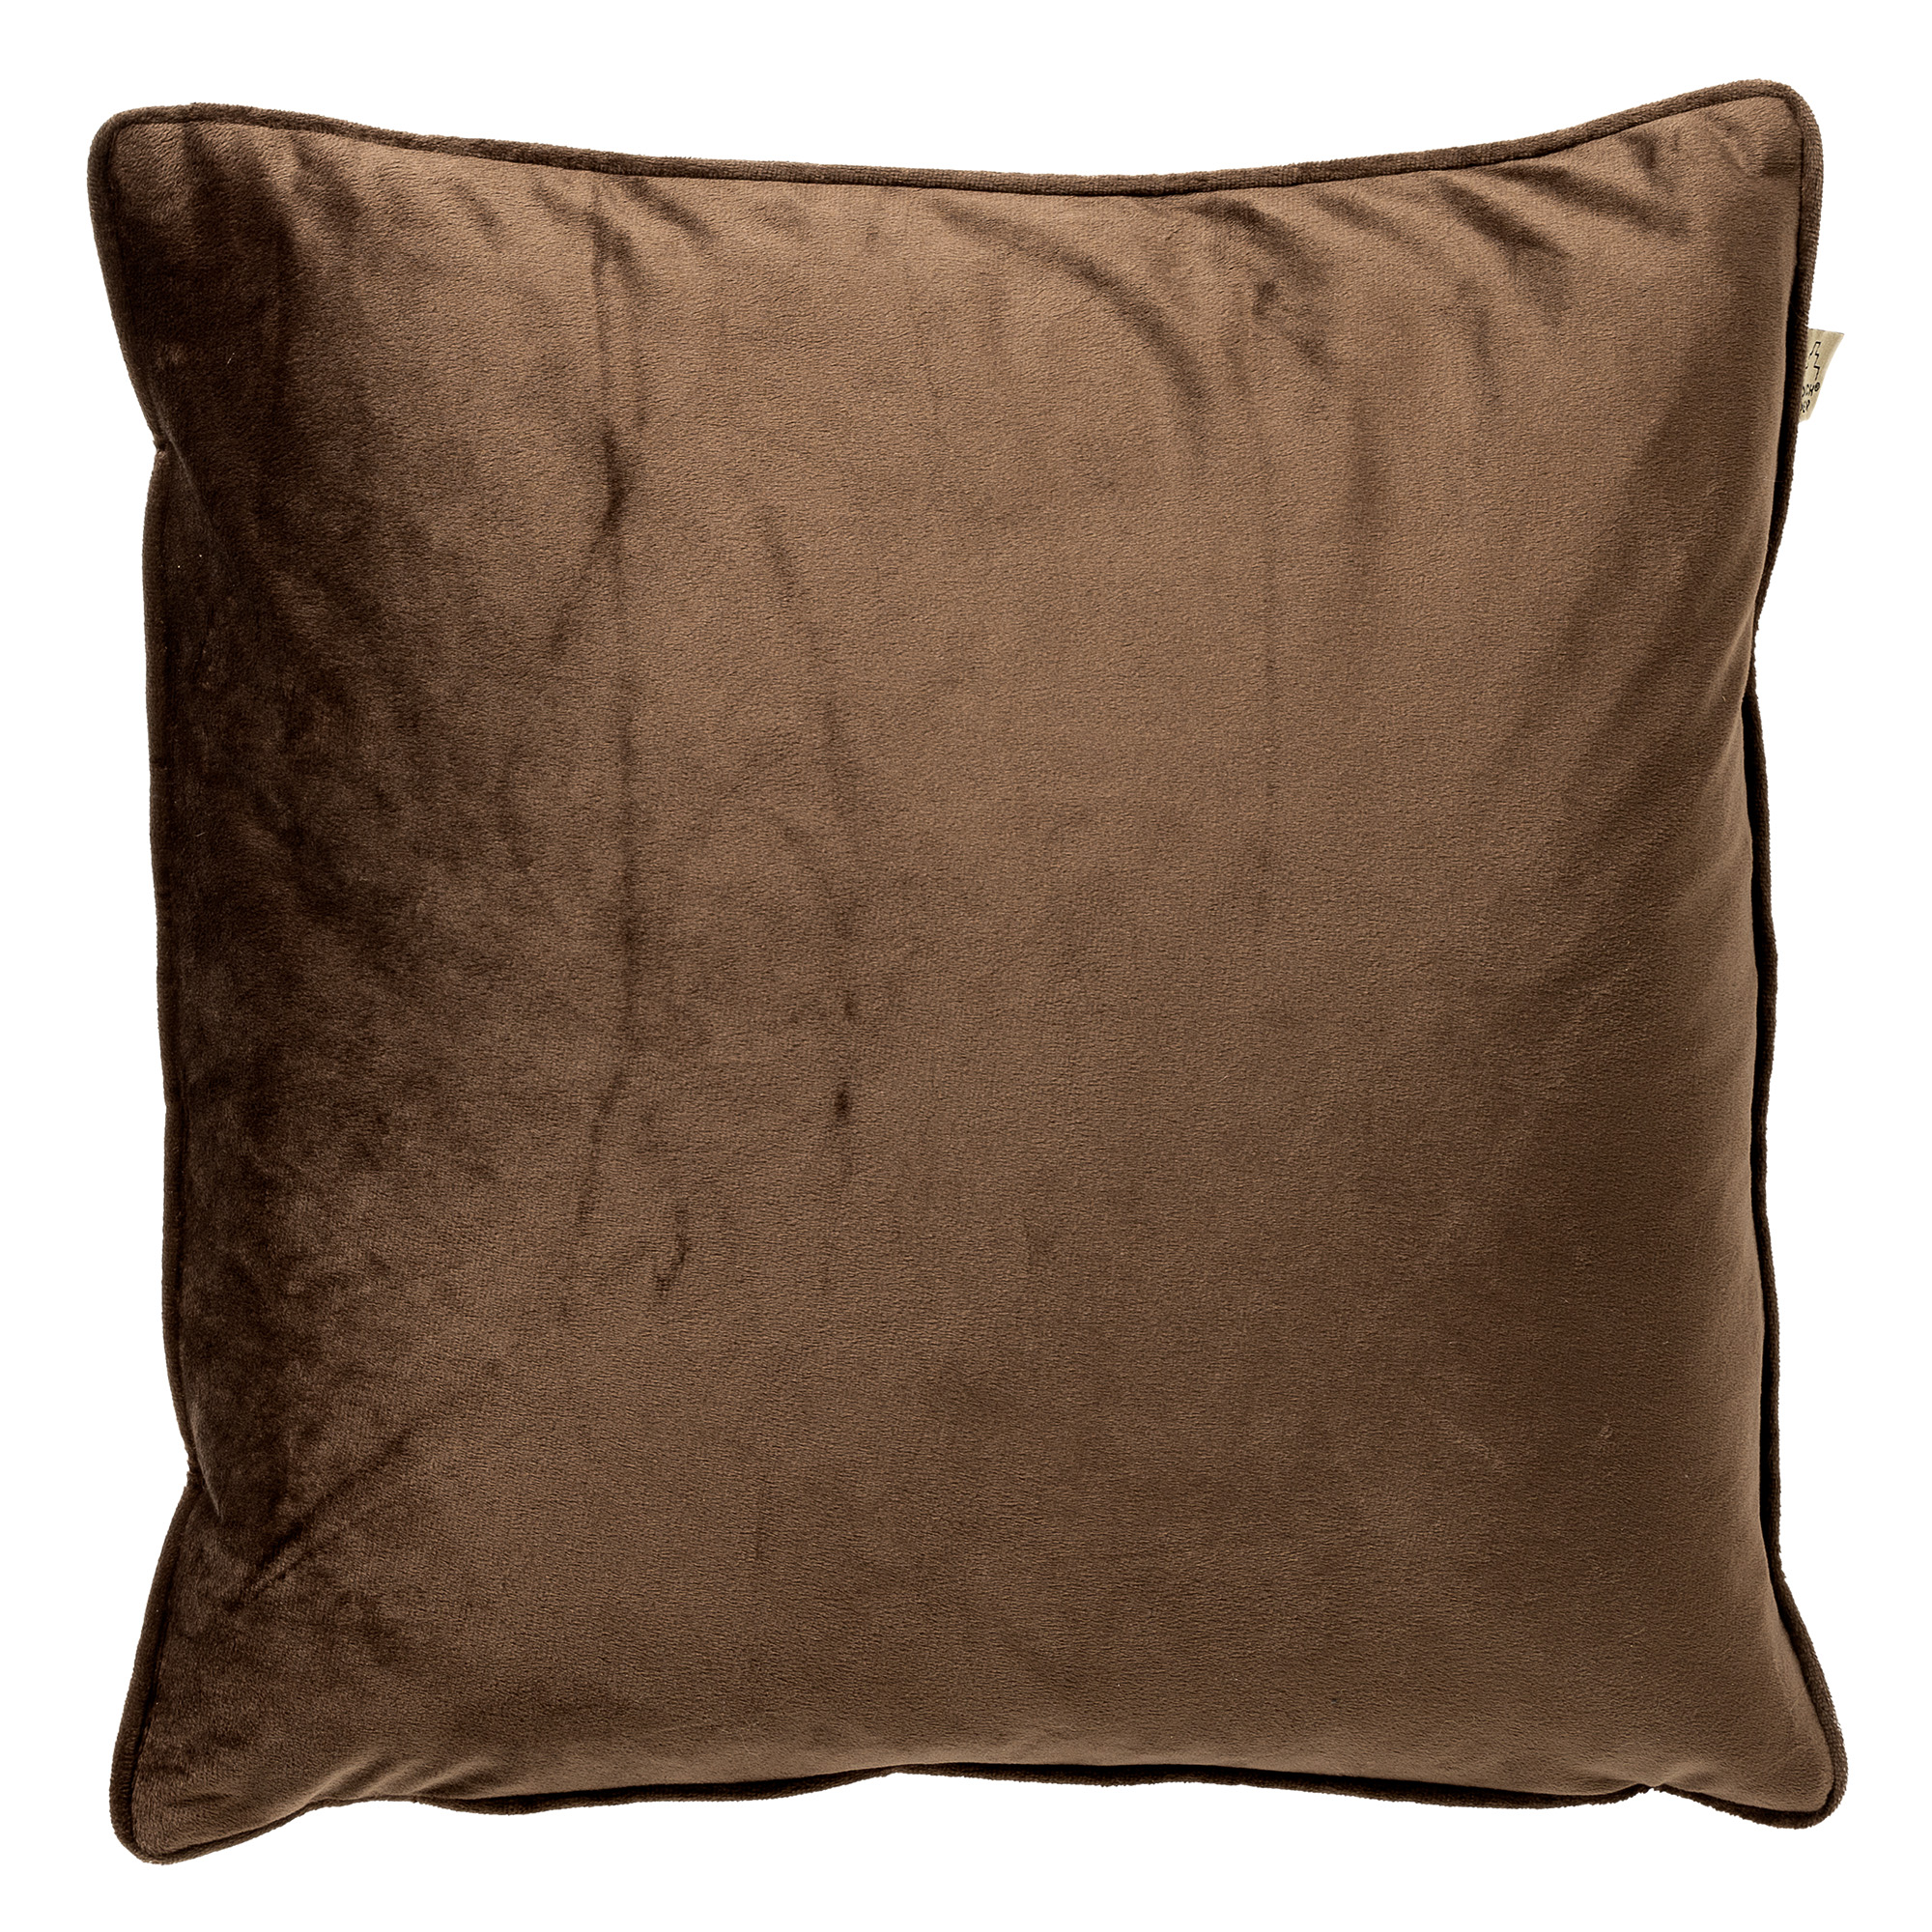 FINN - Cushion 60x60 cm - Chocolate Martini - brown